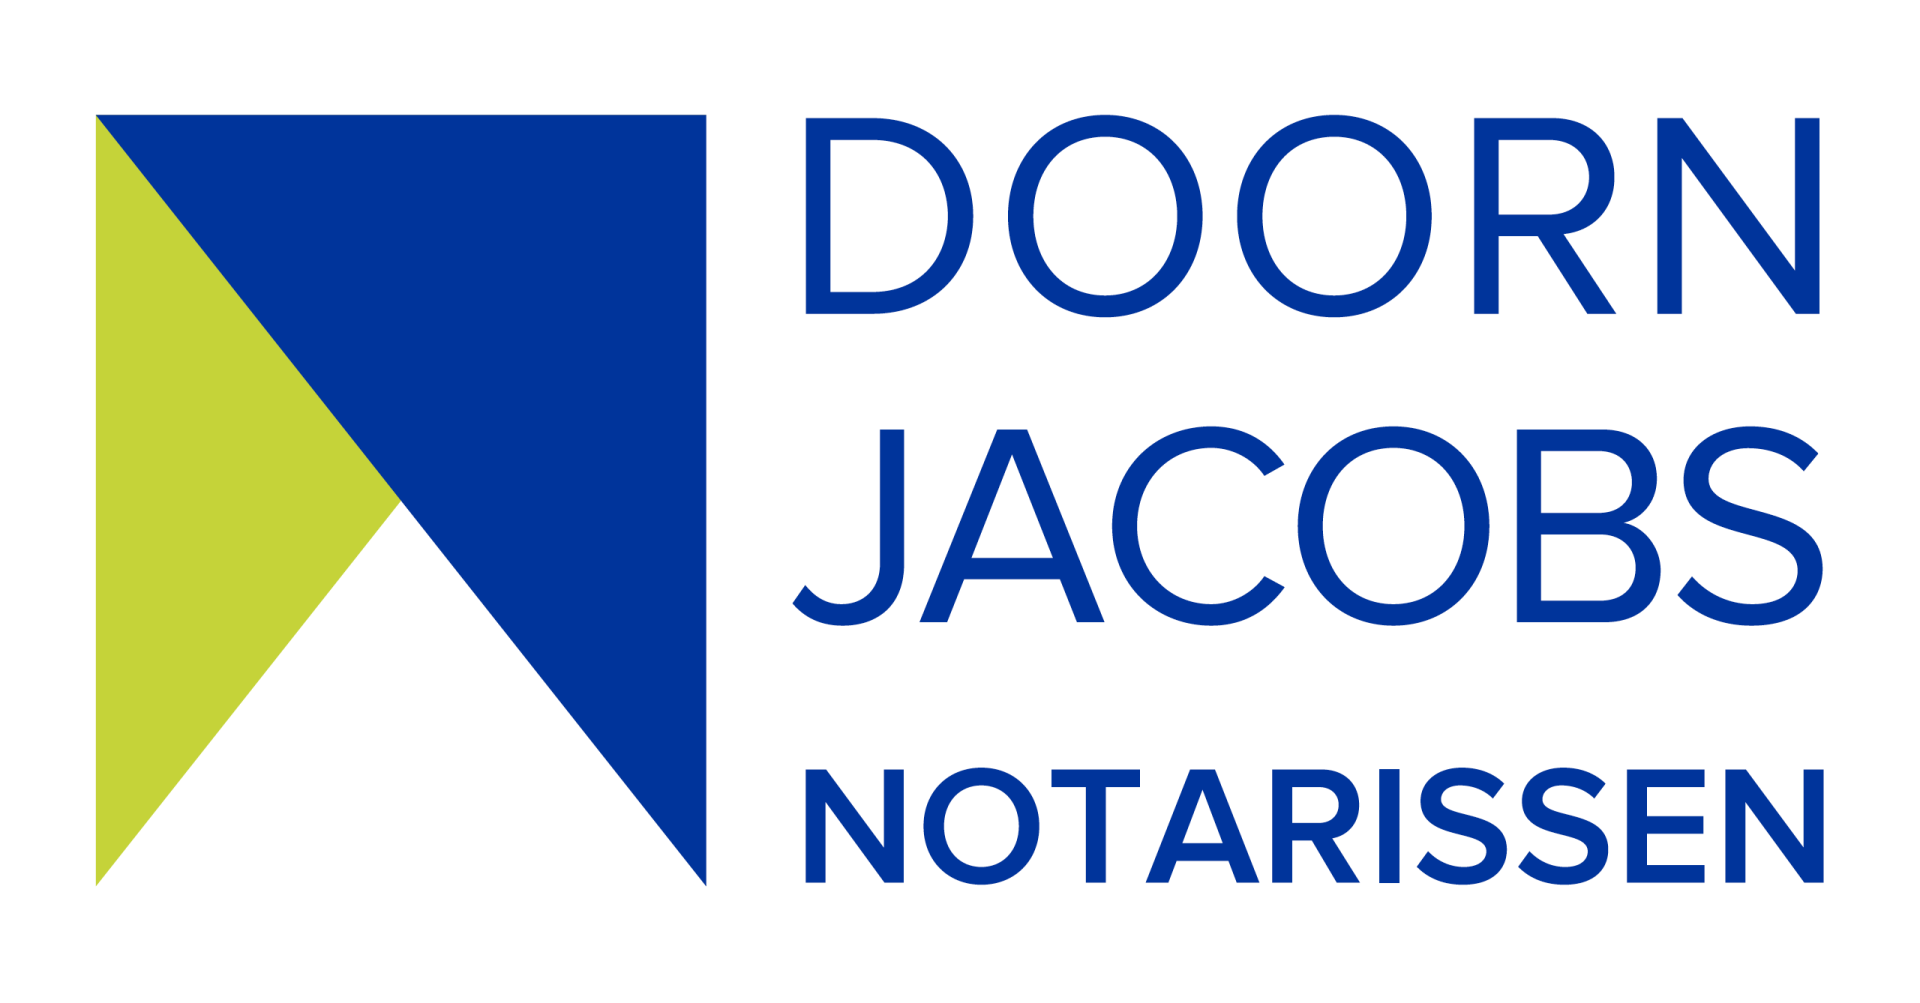 Doorn Jacobs Notarissen